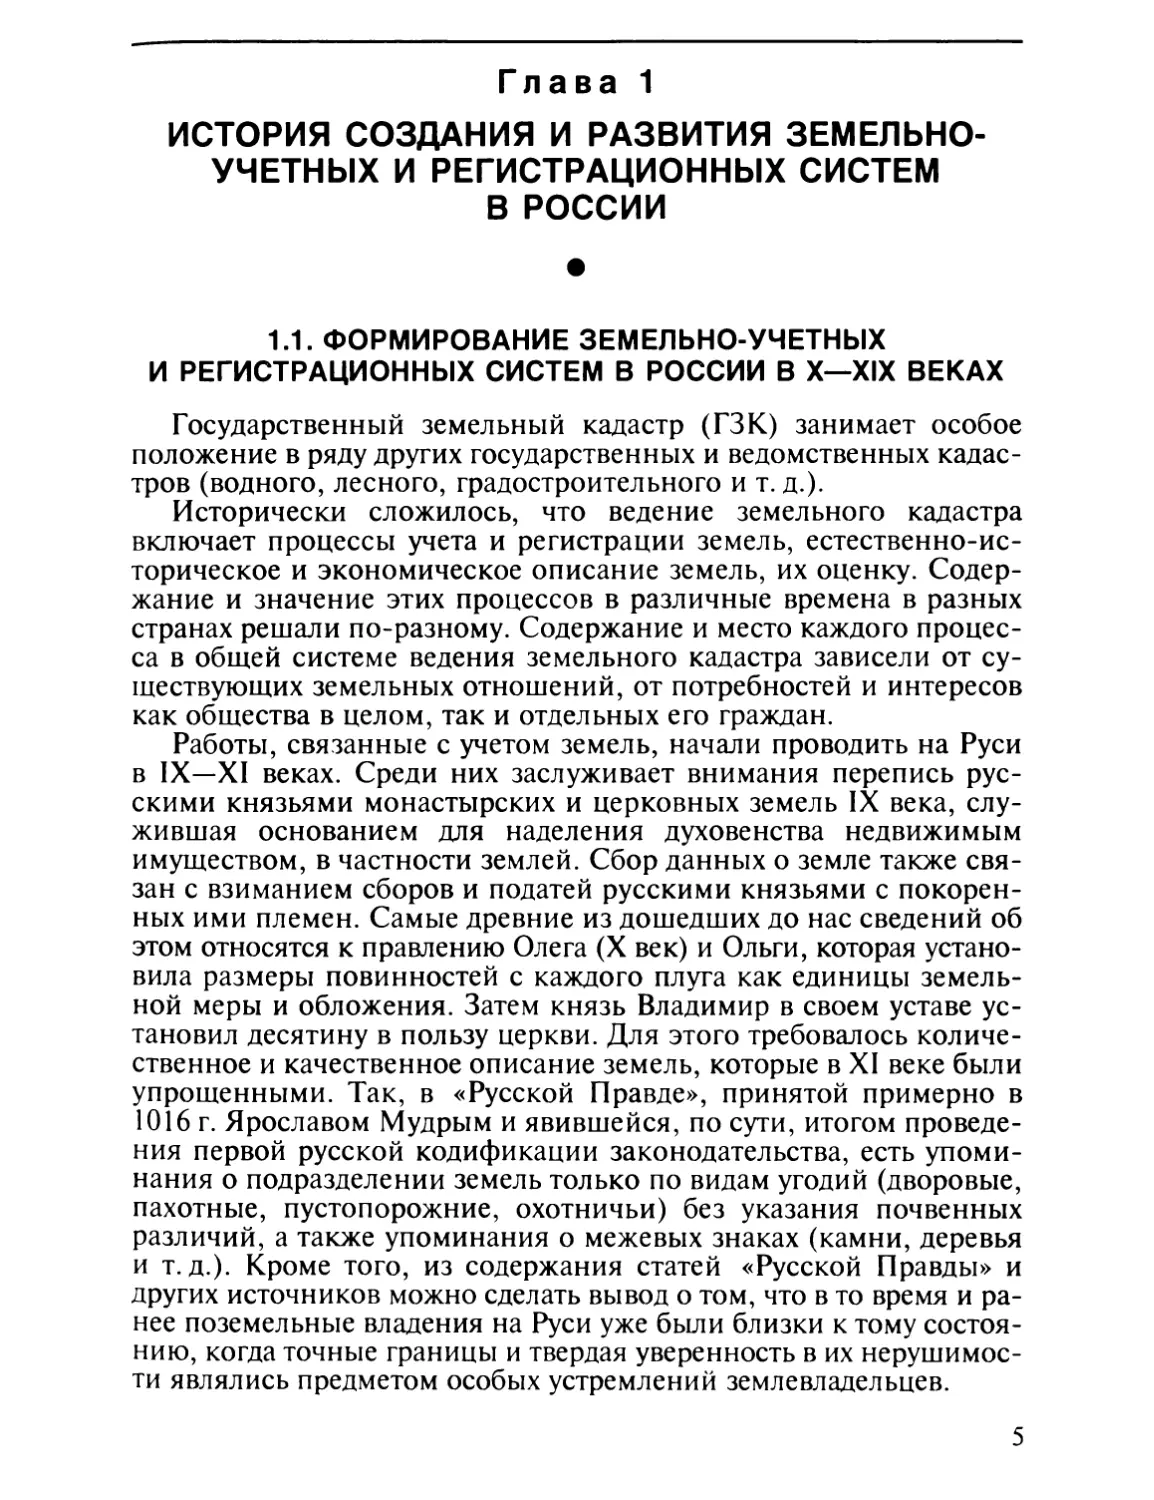 Глава 1. История создания и развития земельно-учетных и регистрационных систем в России